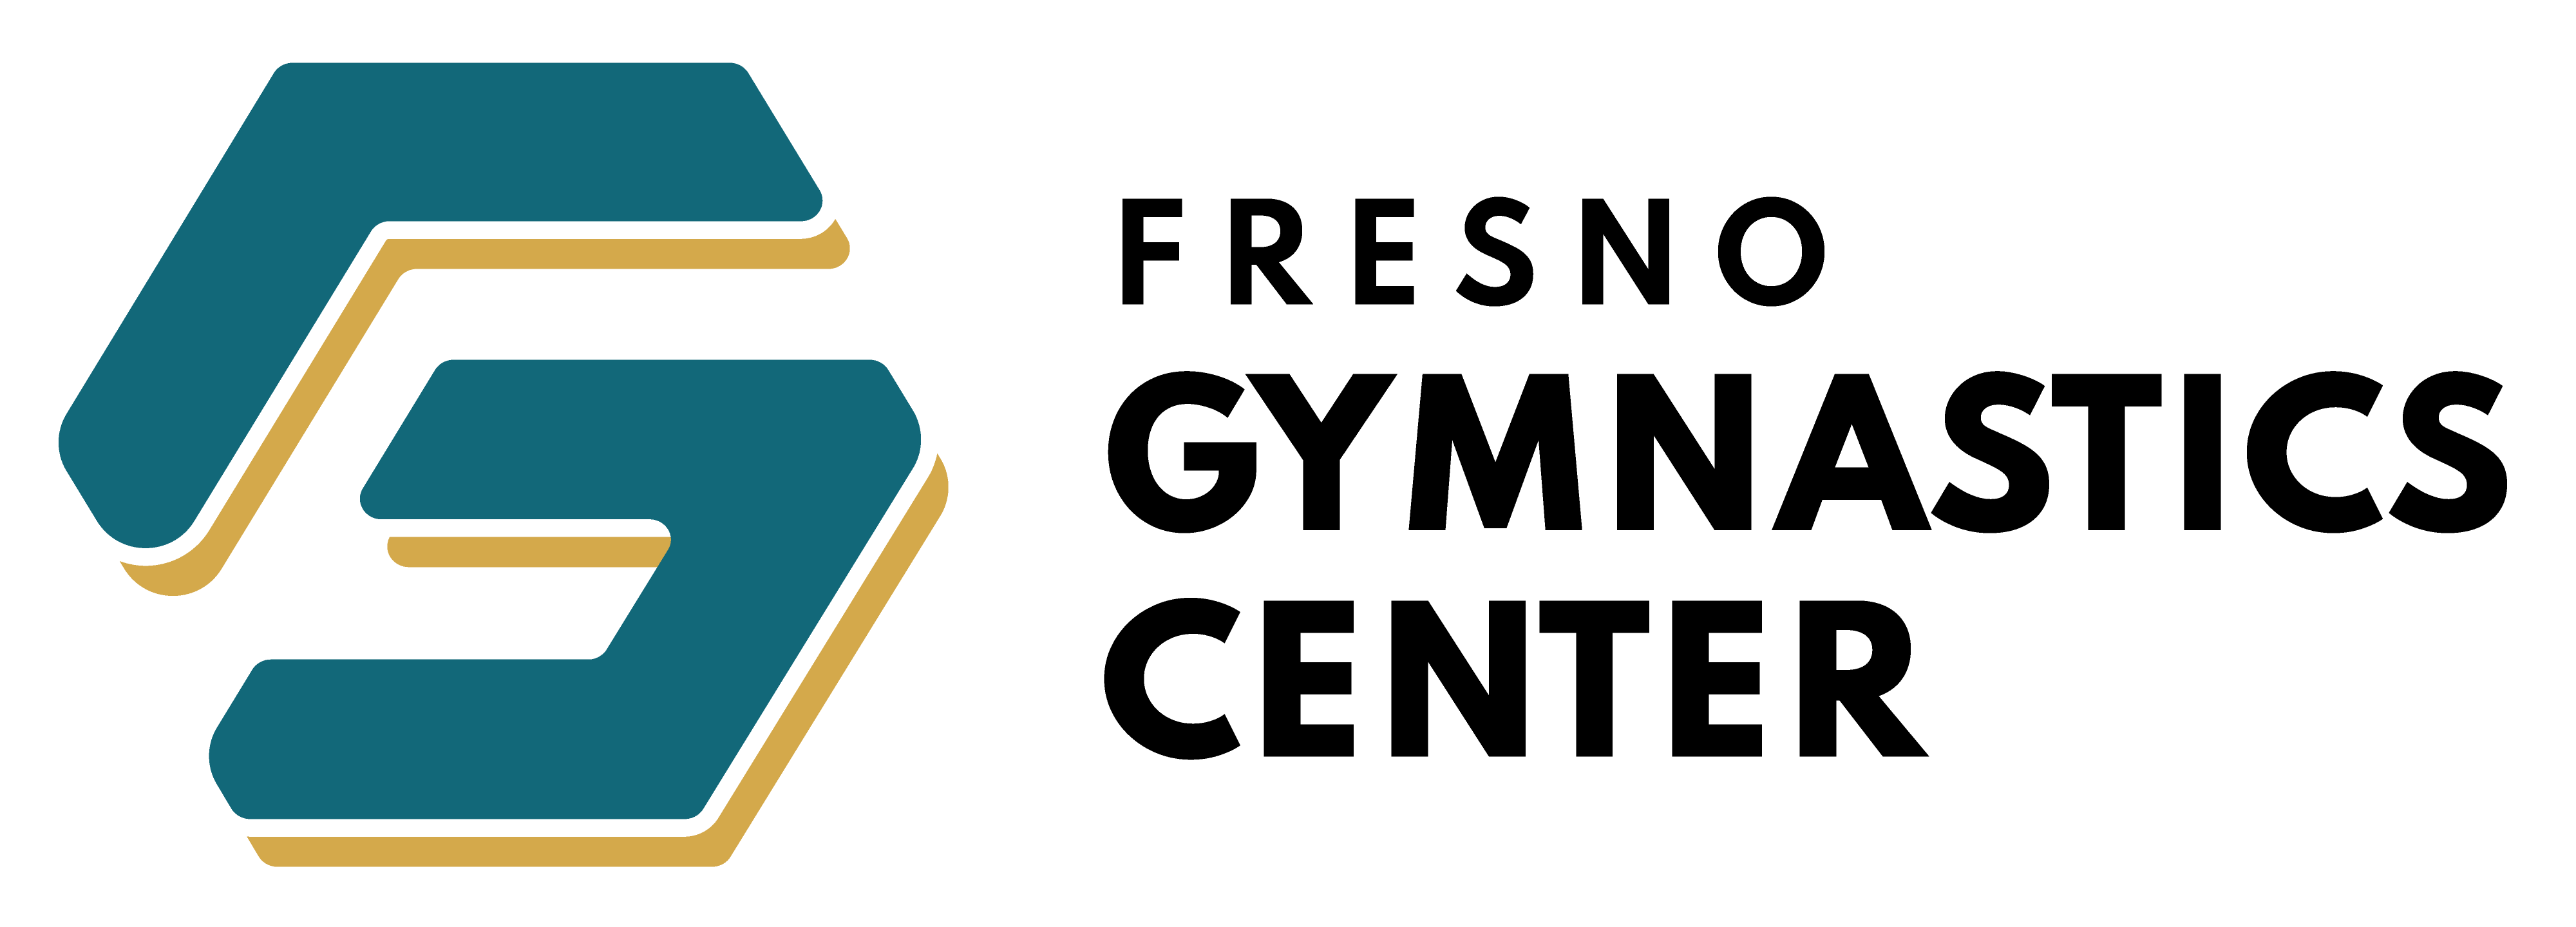 Fresno Gymnastics Center Logo